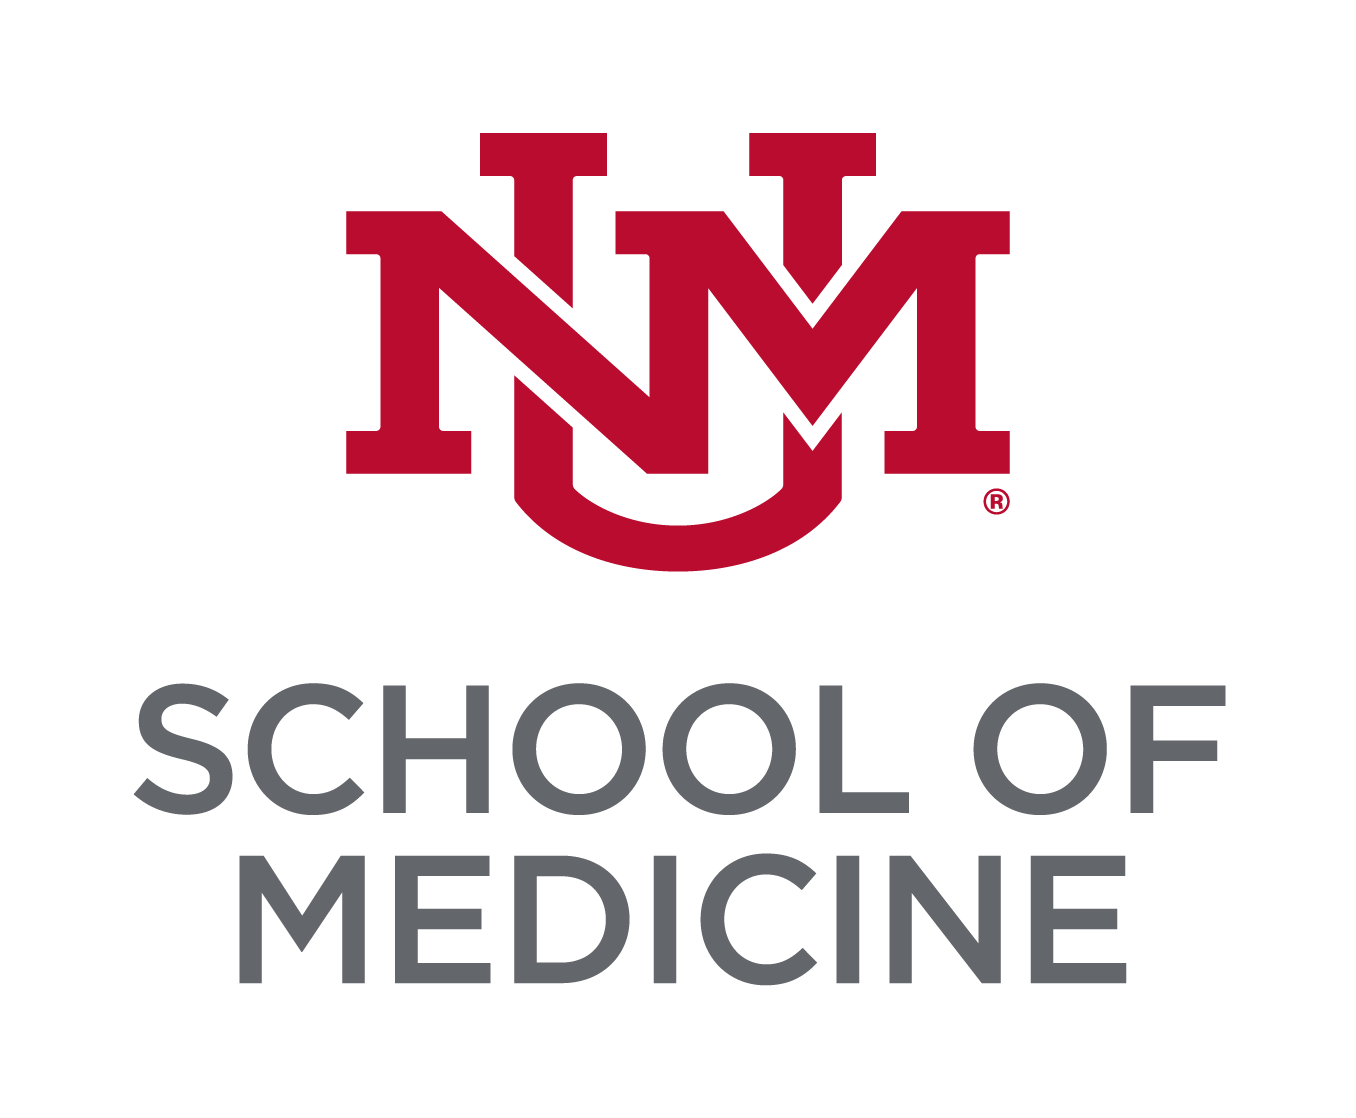 चेरी लाल यूएनएम विश्वविद्यालय ब्लॉक मोनोग्राम लोबो ग्रे शीर्षक "स्कूल ऑफ मेडिसिन" के ऊपर रखा गया है।